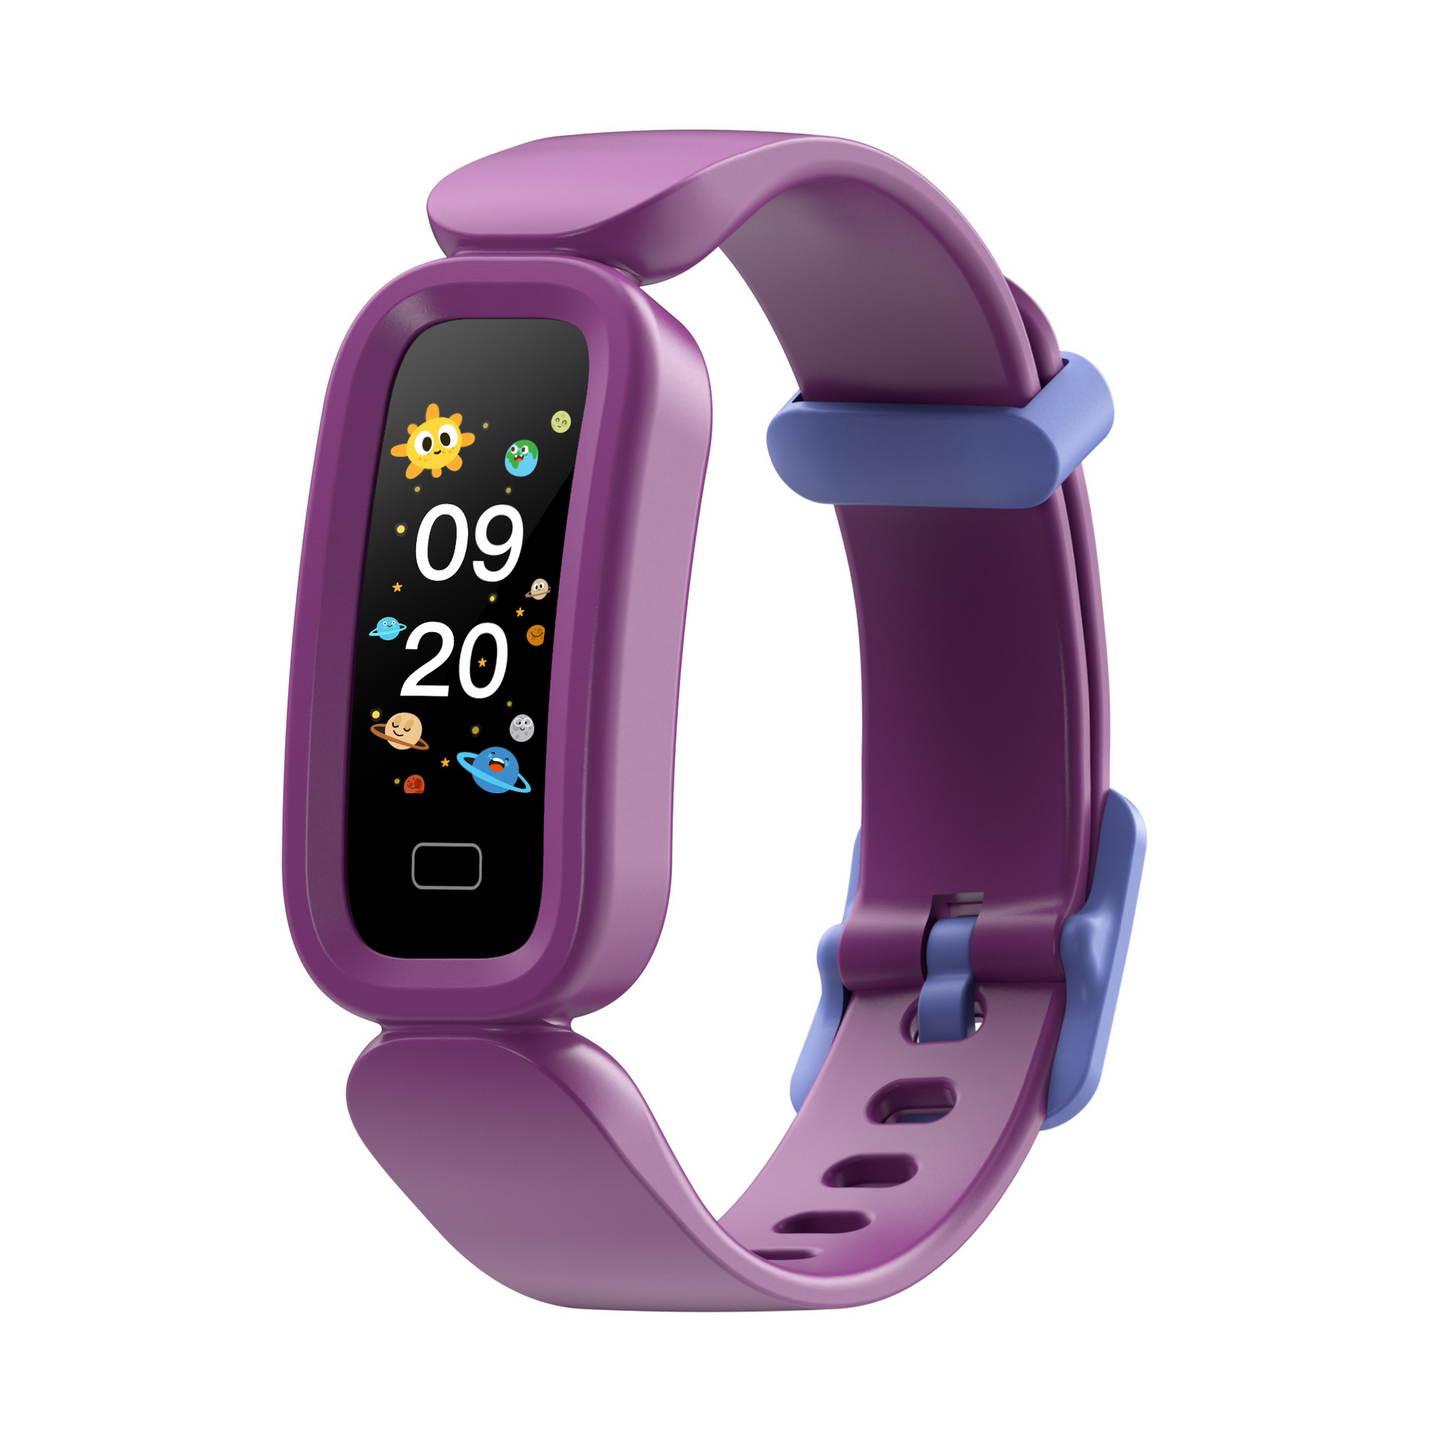 New smart bracelet children's alarm bracelet, learning heart rate sleep monitoring sports pedometer bracelet